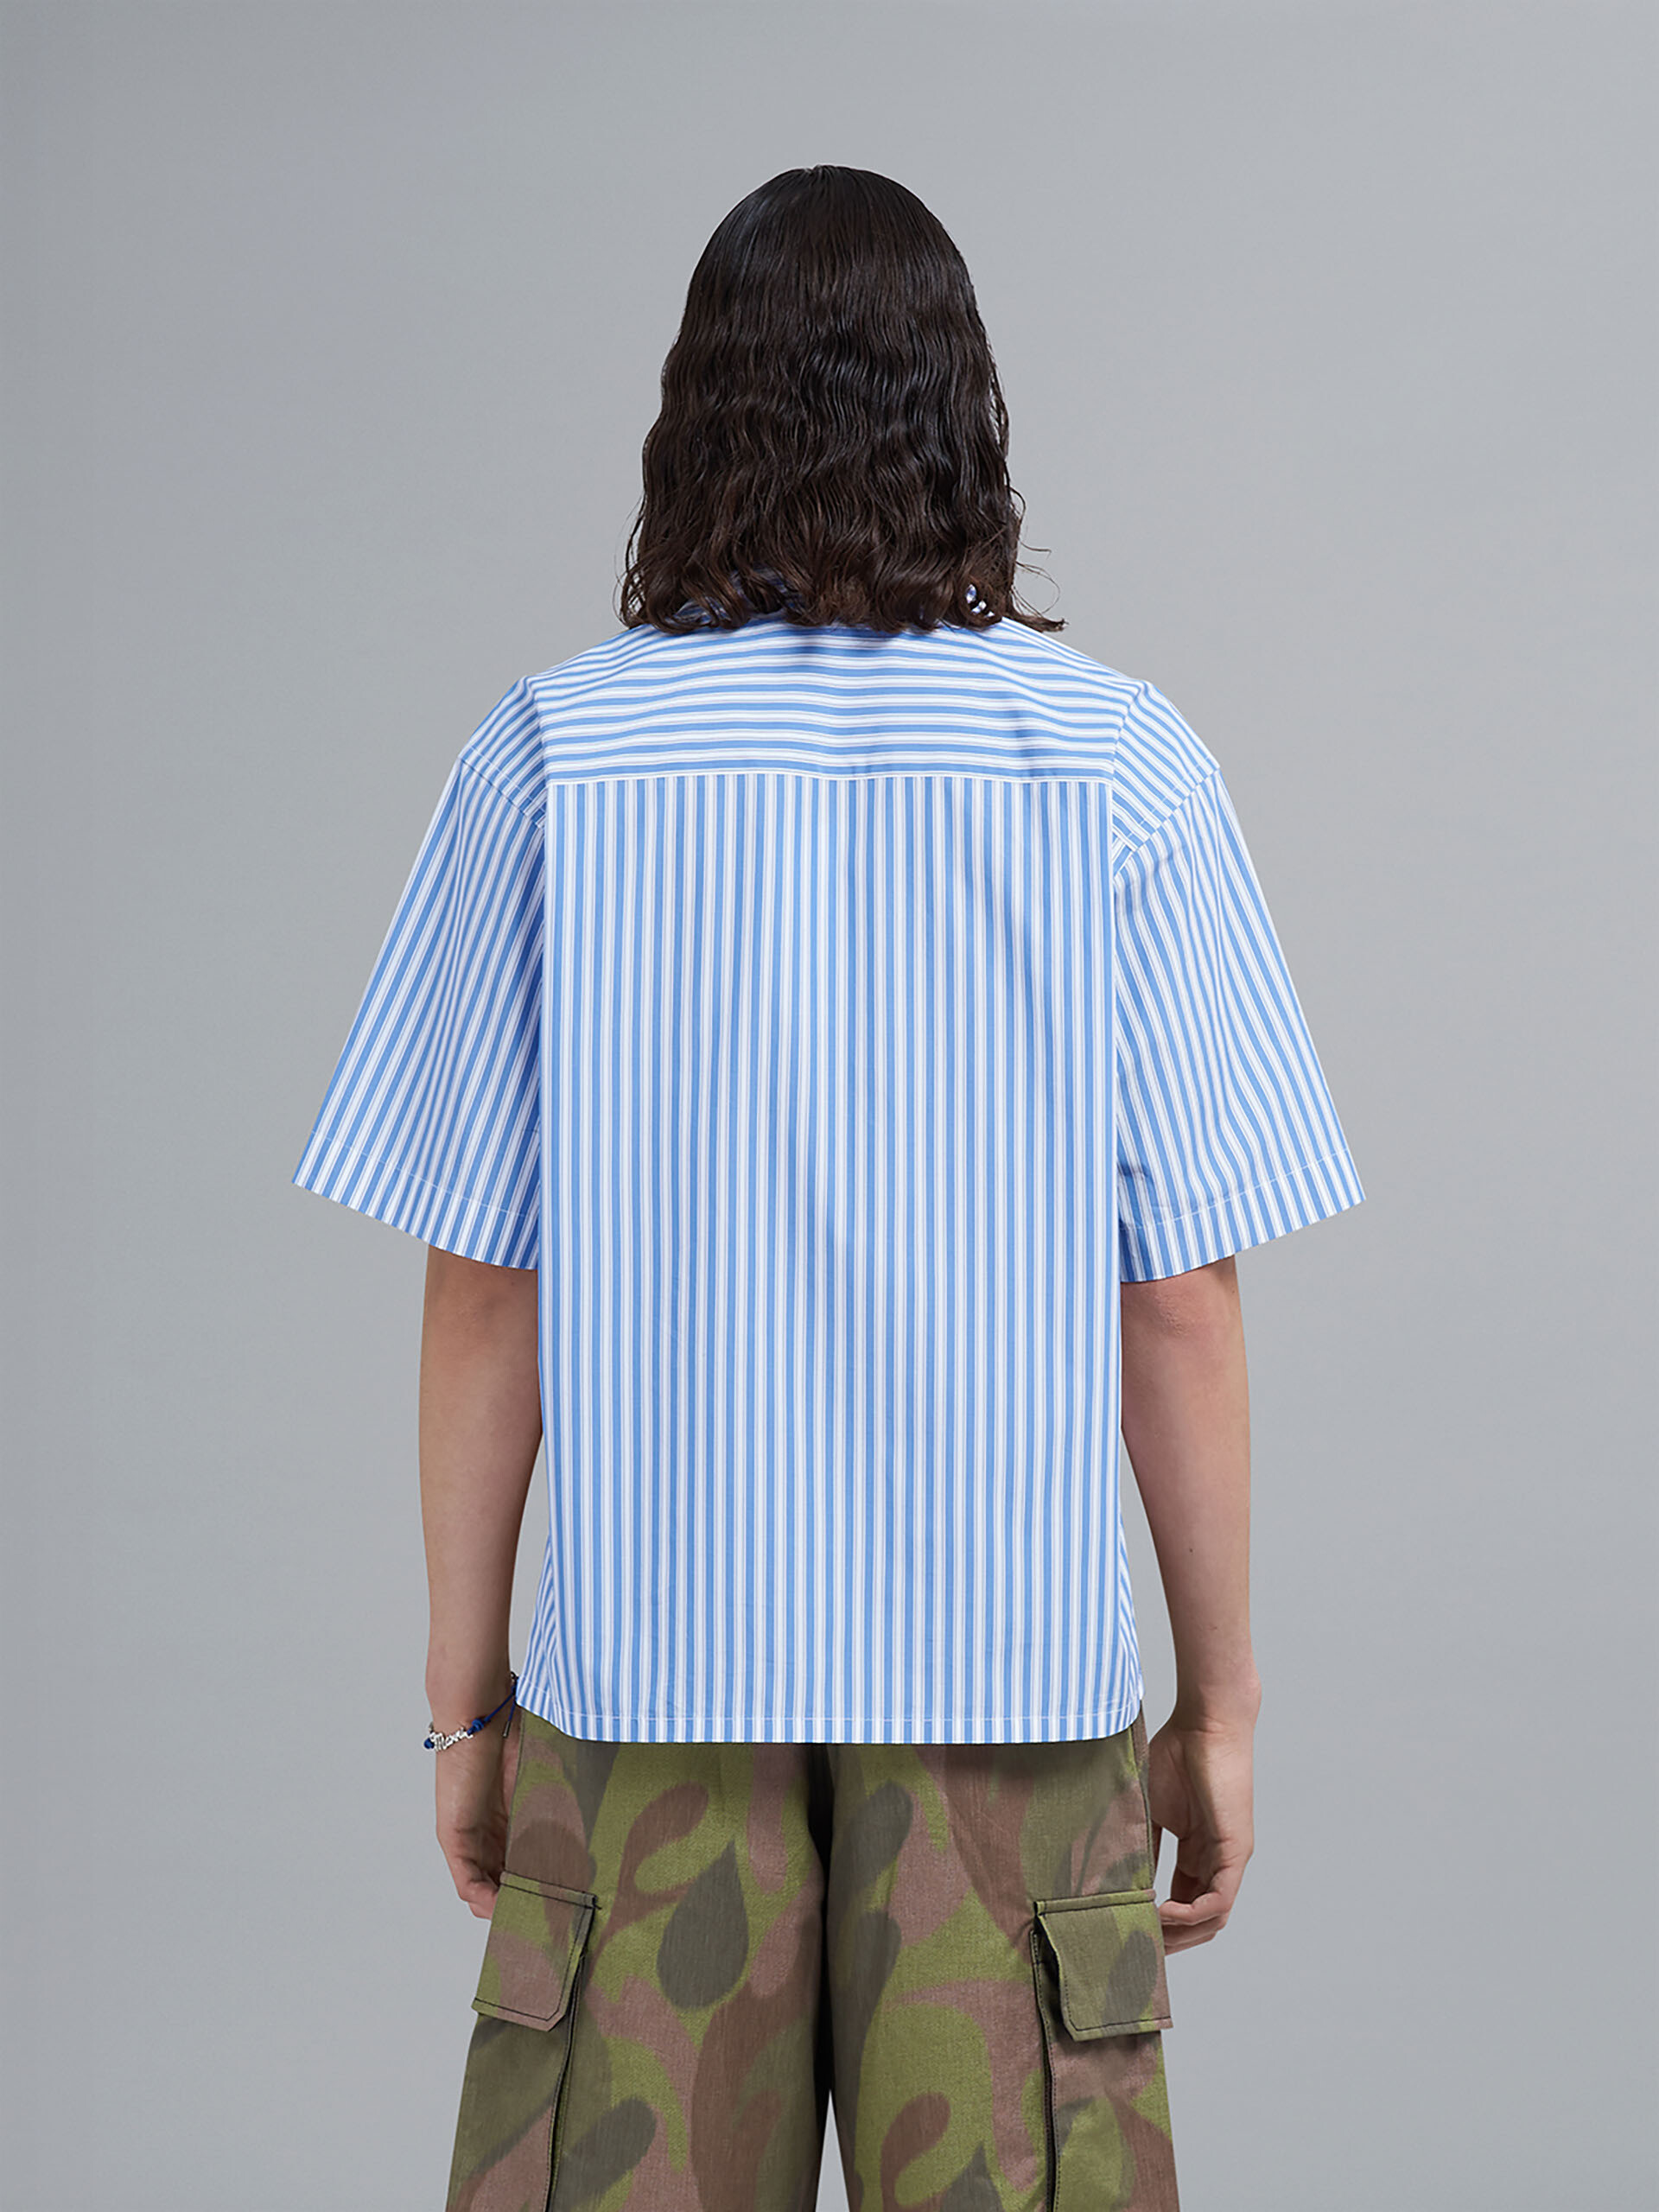 50年代Camoプリント 混合素材製ボウリングシャツ - シャツ - Image 3